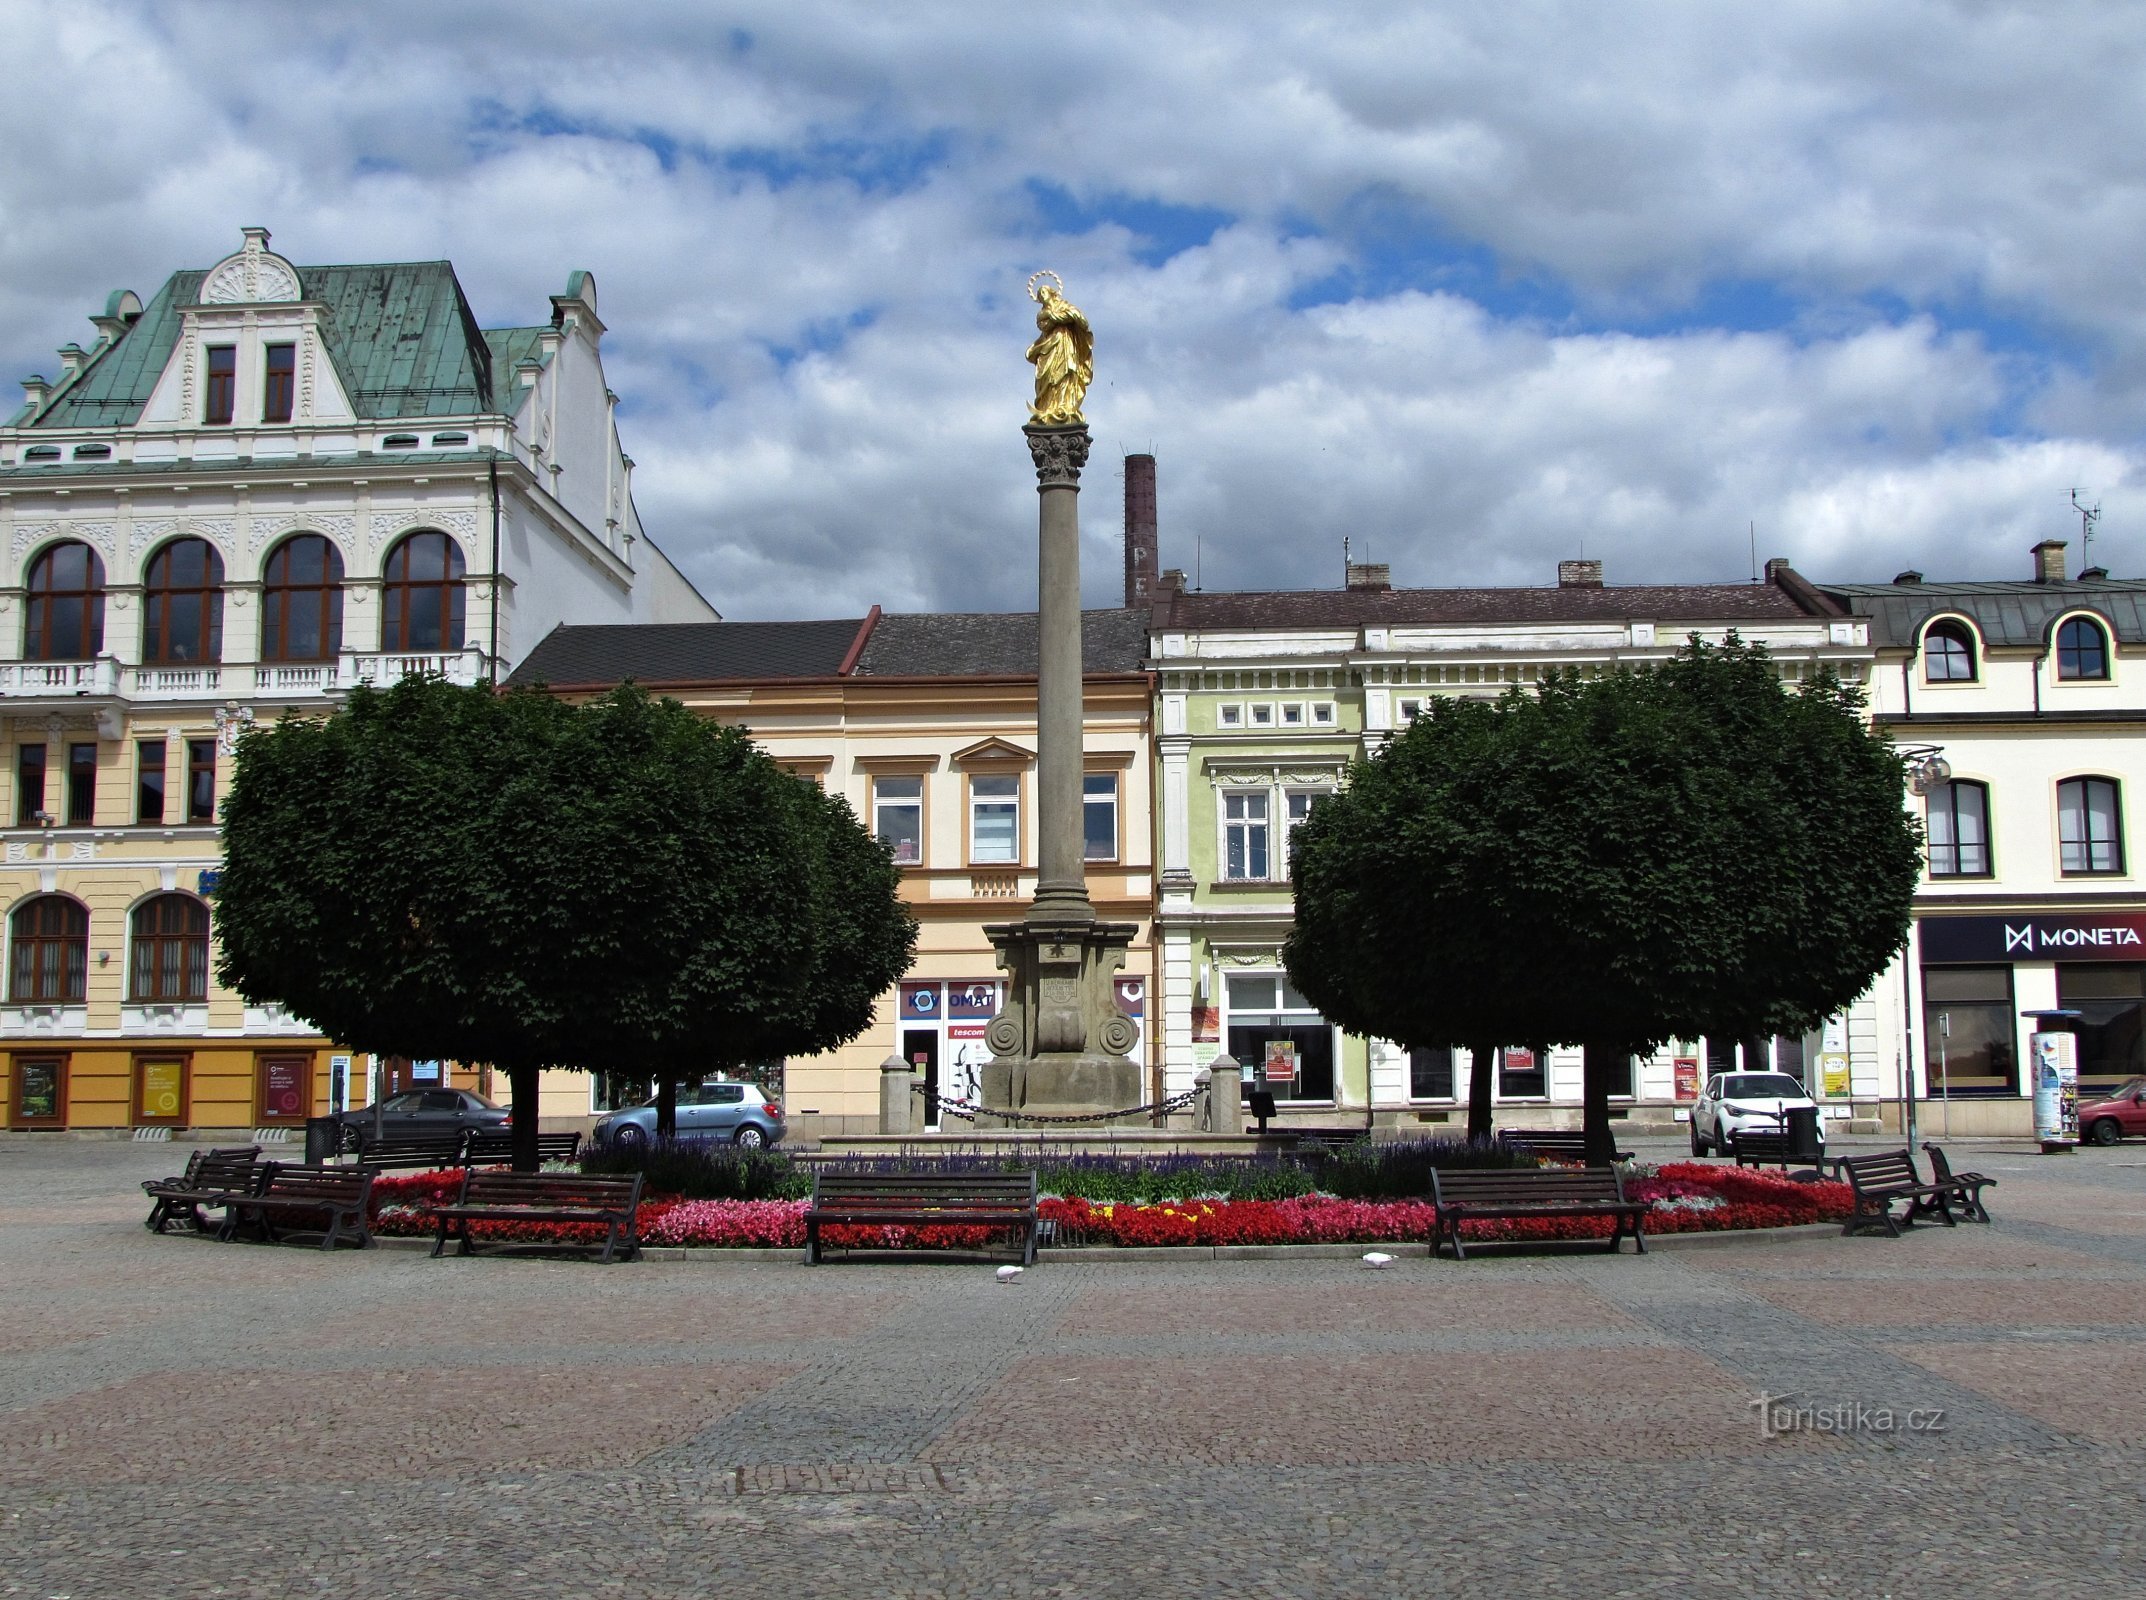 Ústí nad Orlicí - the most beautiful city market